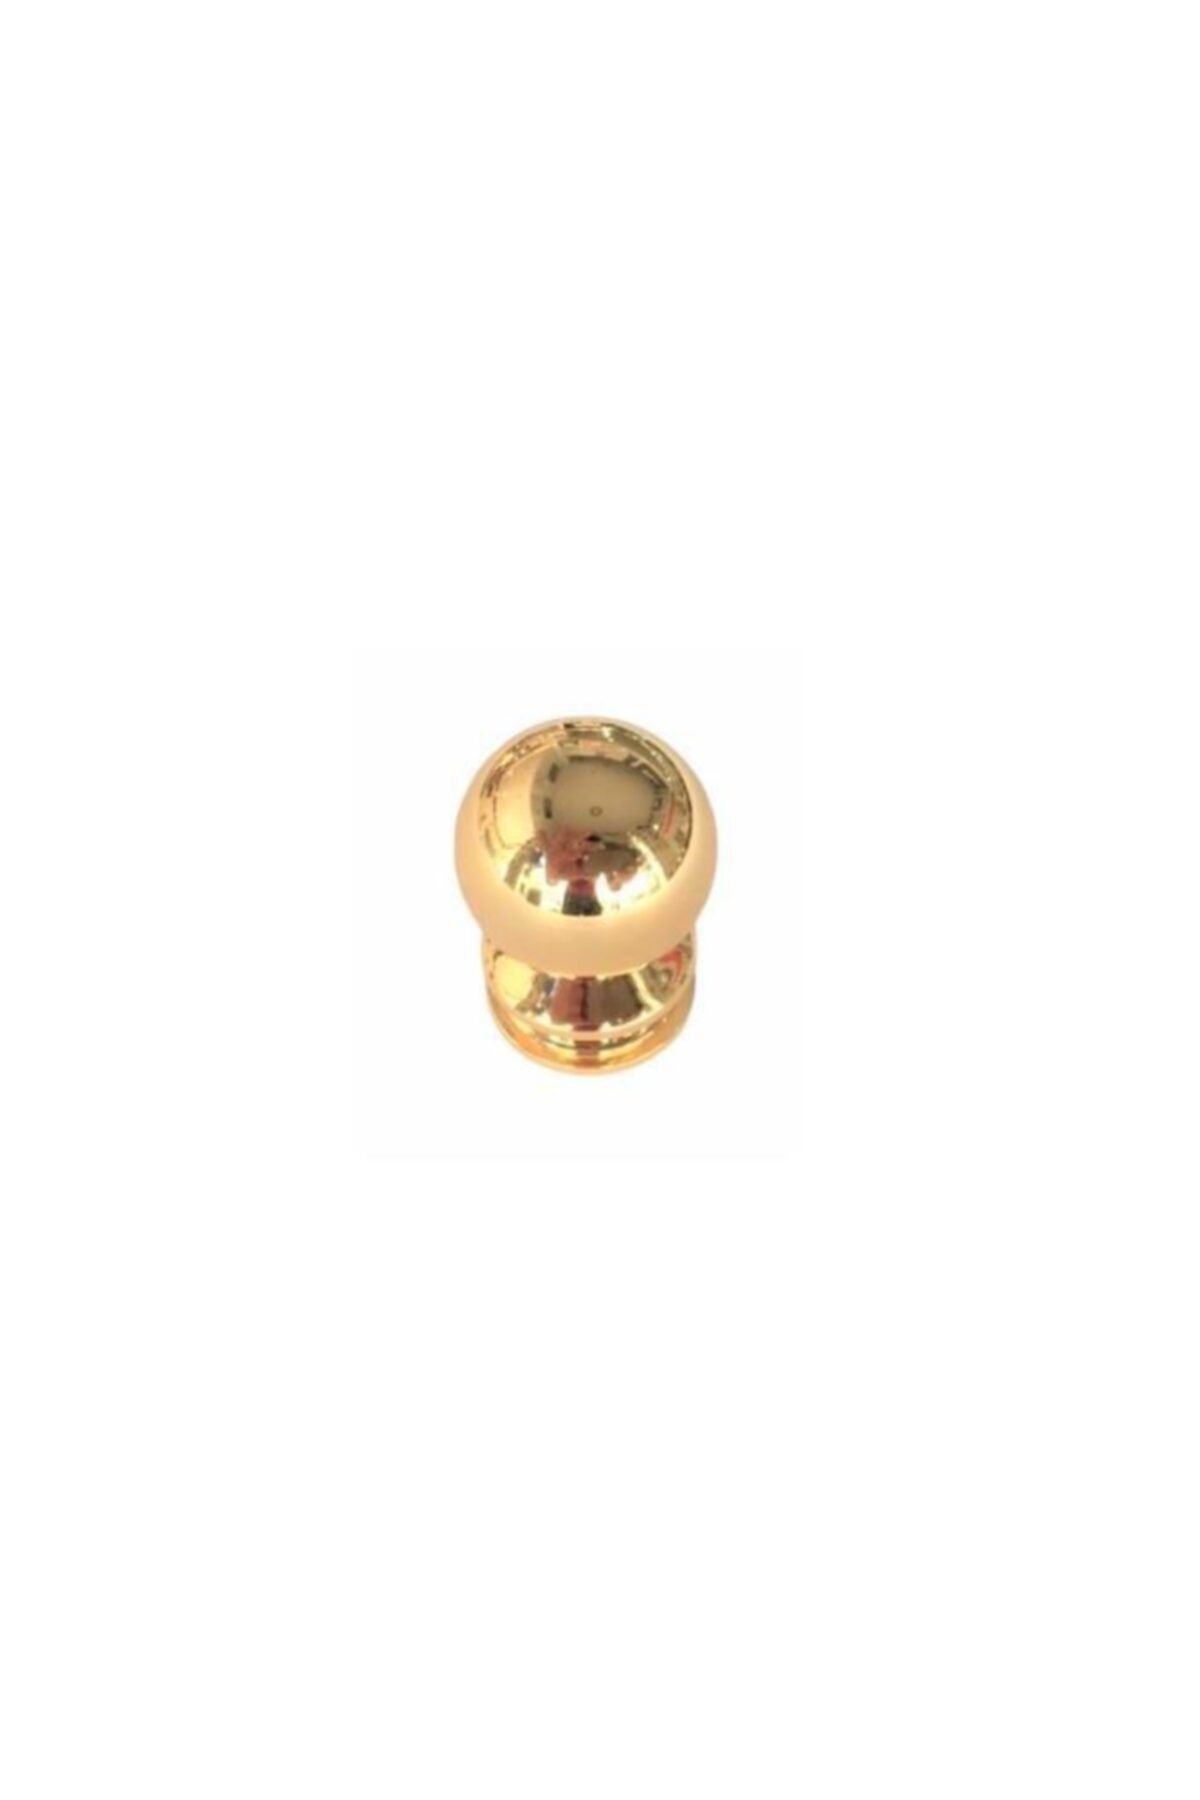 bablife Küçük Misket Düğme Altın Sarısı 25mm Çapında Çekmece Dolap Mobilya Kulpları